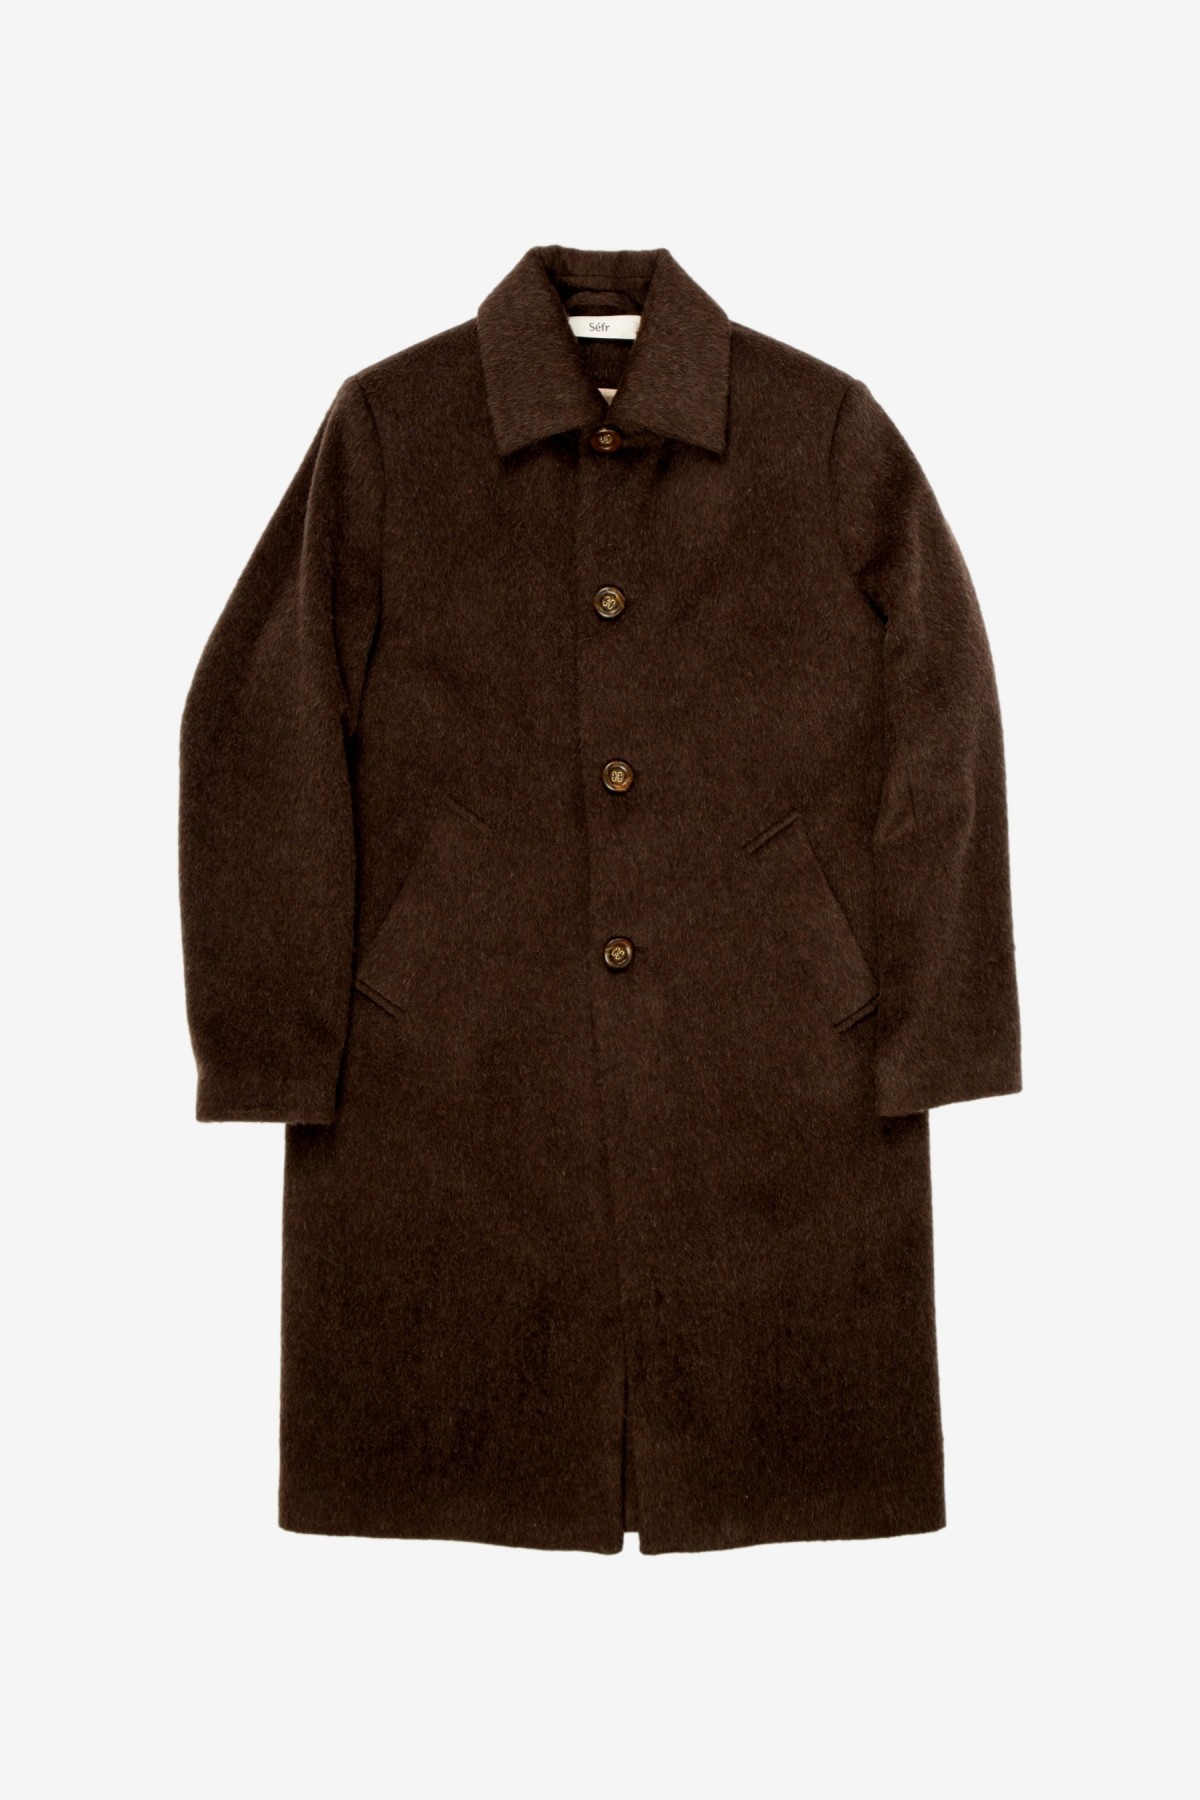 Séfr Esco Coat in Brown Mohair